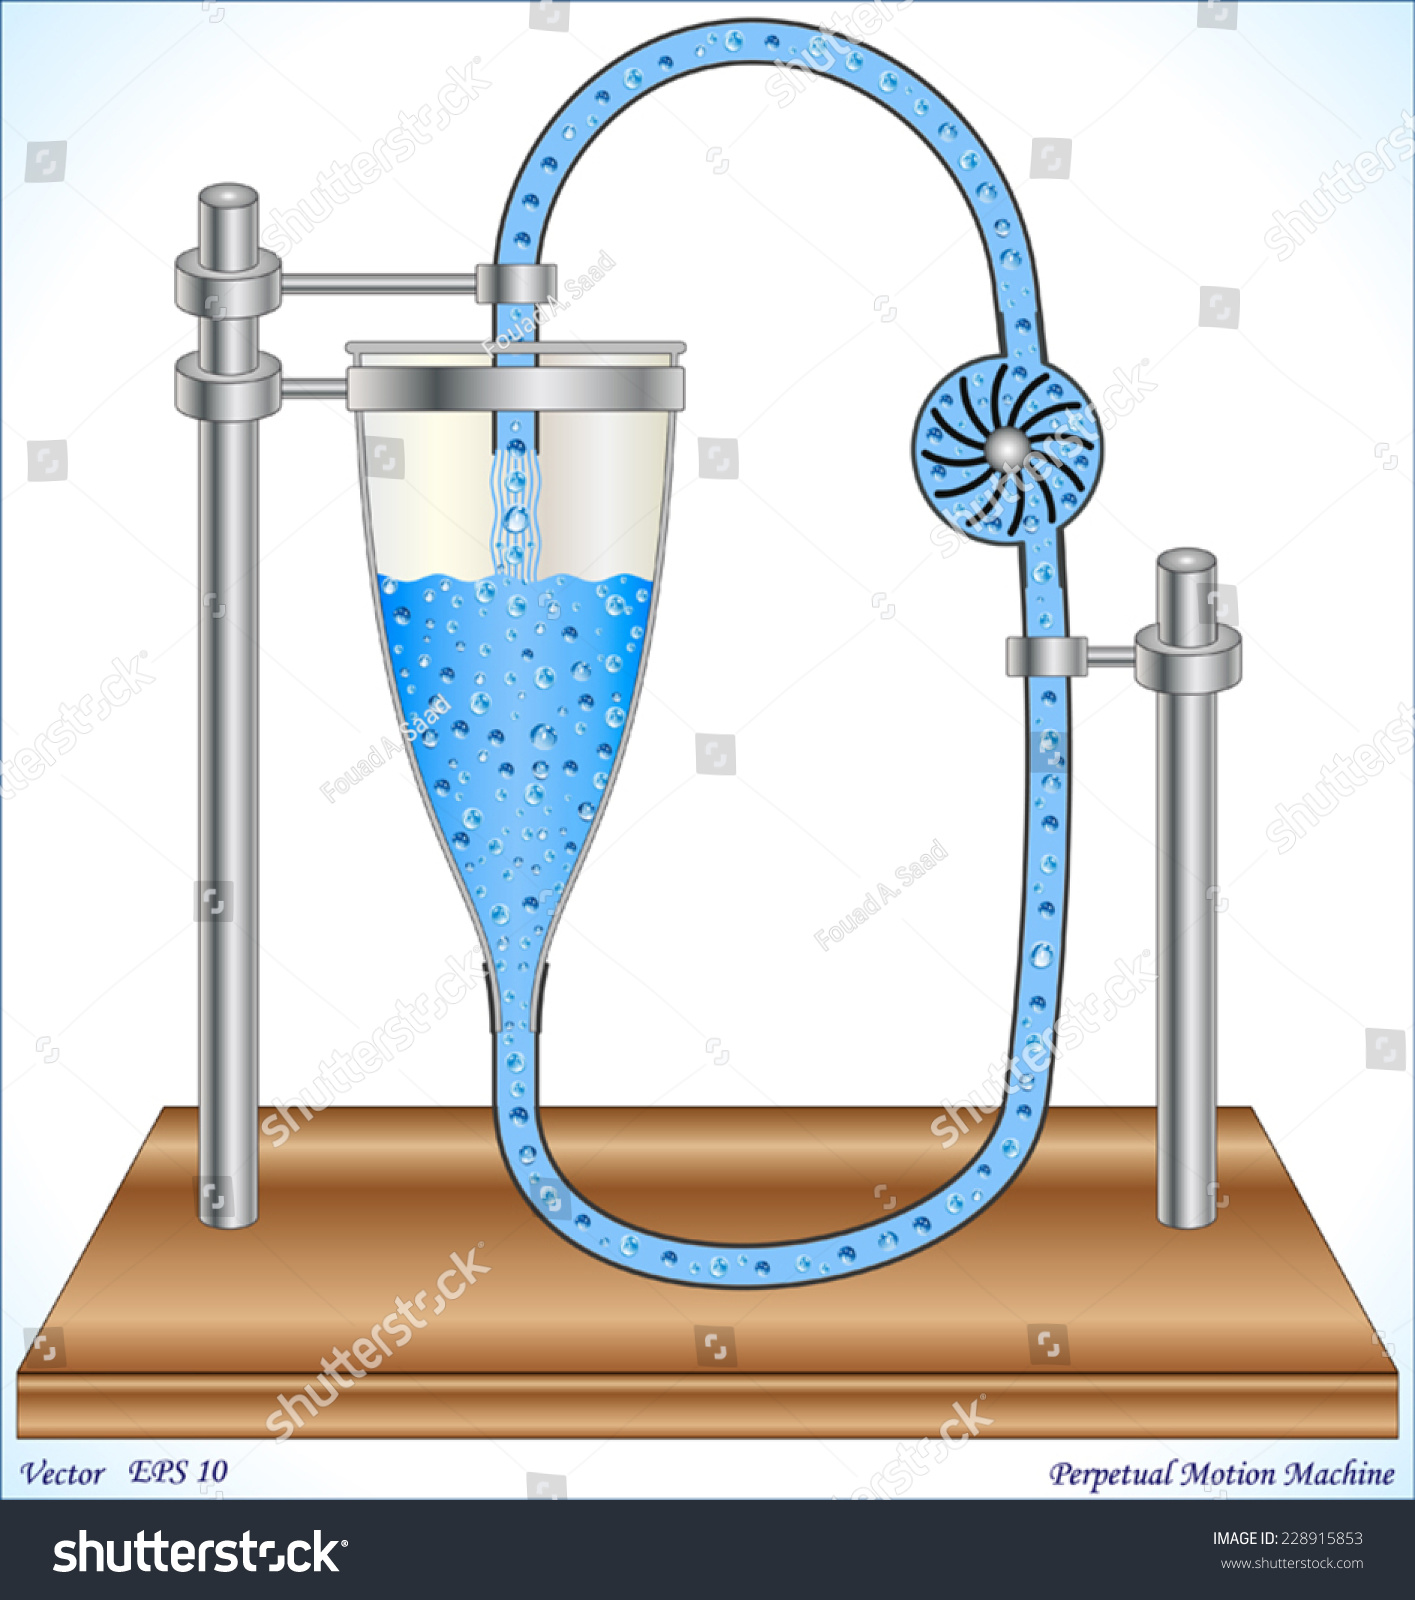 Переливания жидкости в сосудах. Вечный двигатель на воде. Вечный водопровод.